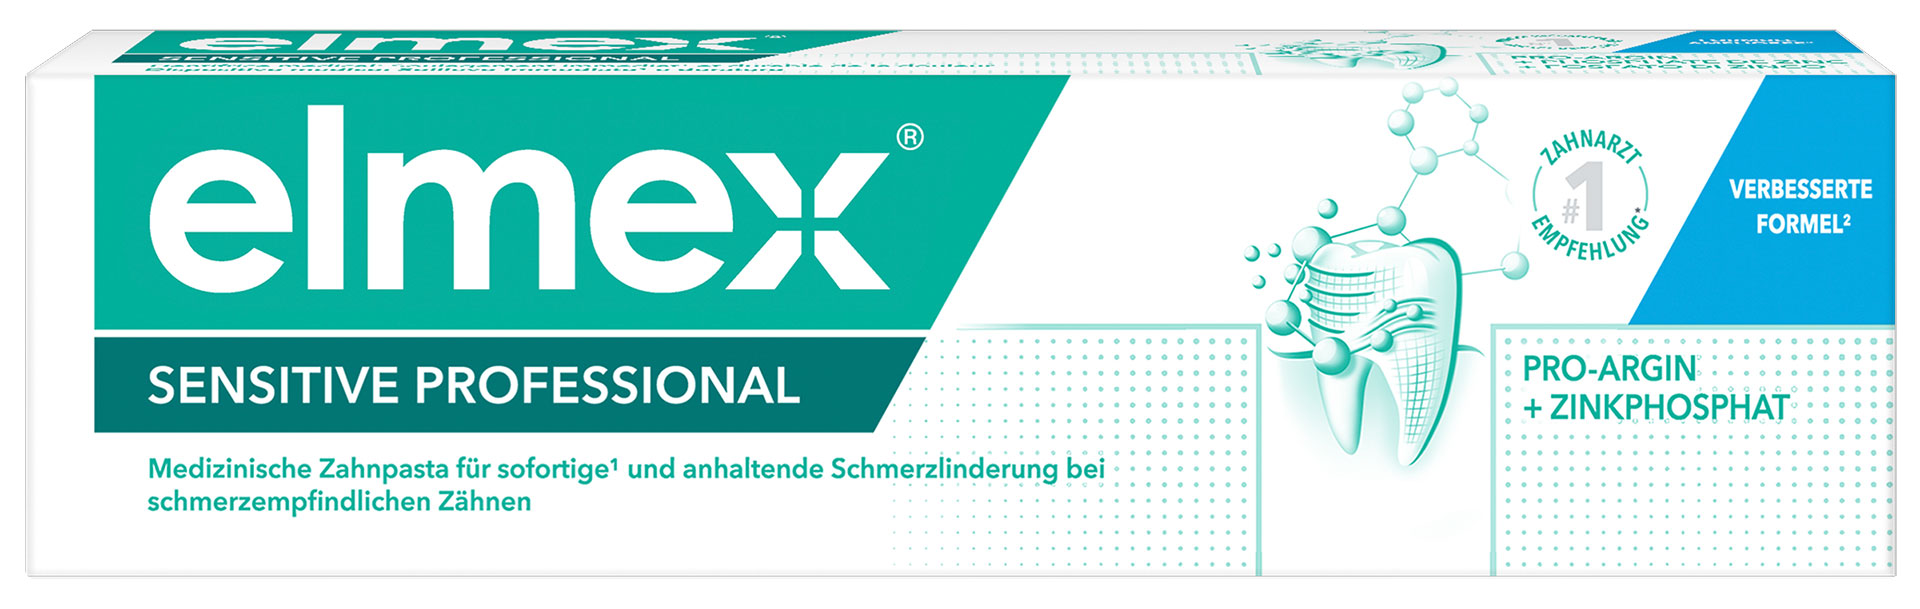 Bildinfo: Verbesserte elmex® SENSITIVE PROFESSIONAL Zahnpasta – jetzt mit Zinkphosphat Bildnachweis: CP GABA